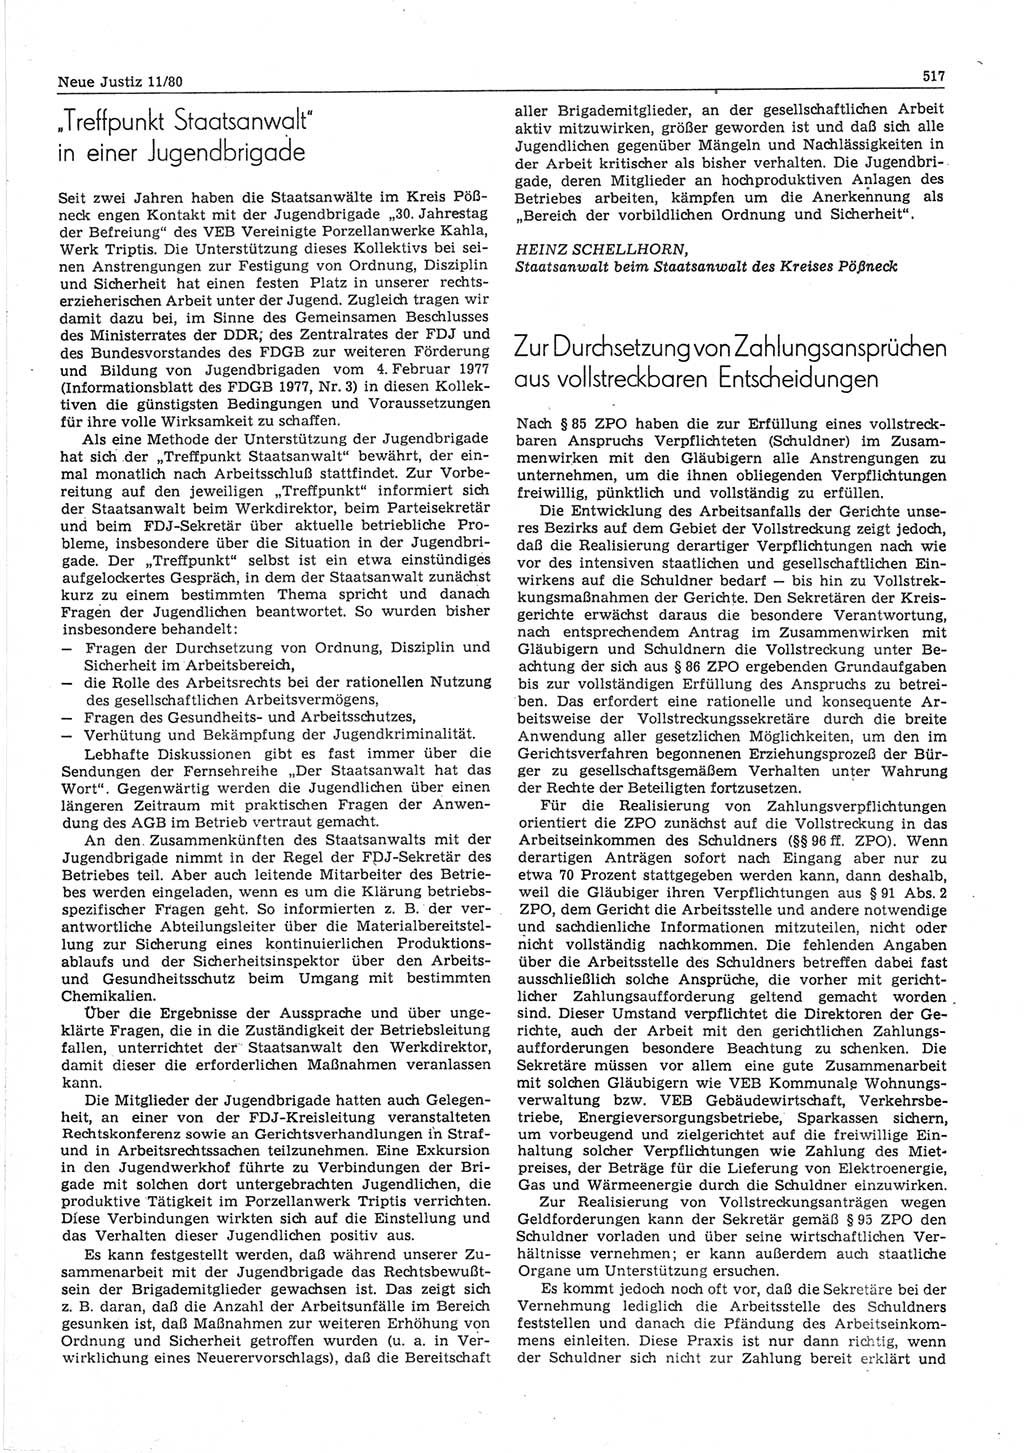 Neue Justiz (NJ), Zeitschrift für sozialistisches Recht und Gesetzlichkeit [Deutsche Demokratische Republik (DDR)], 34. Jahrgang 1980, Seite 517 (NJ DDR 1980, S. 517)